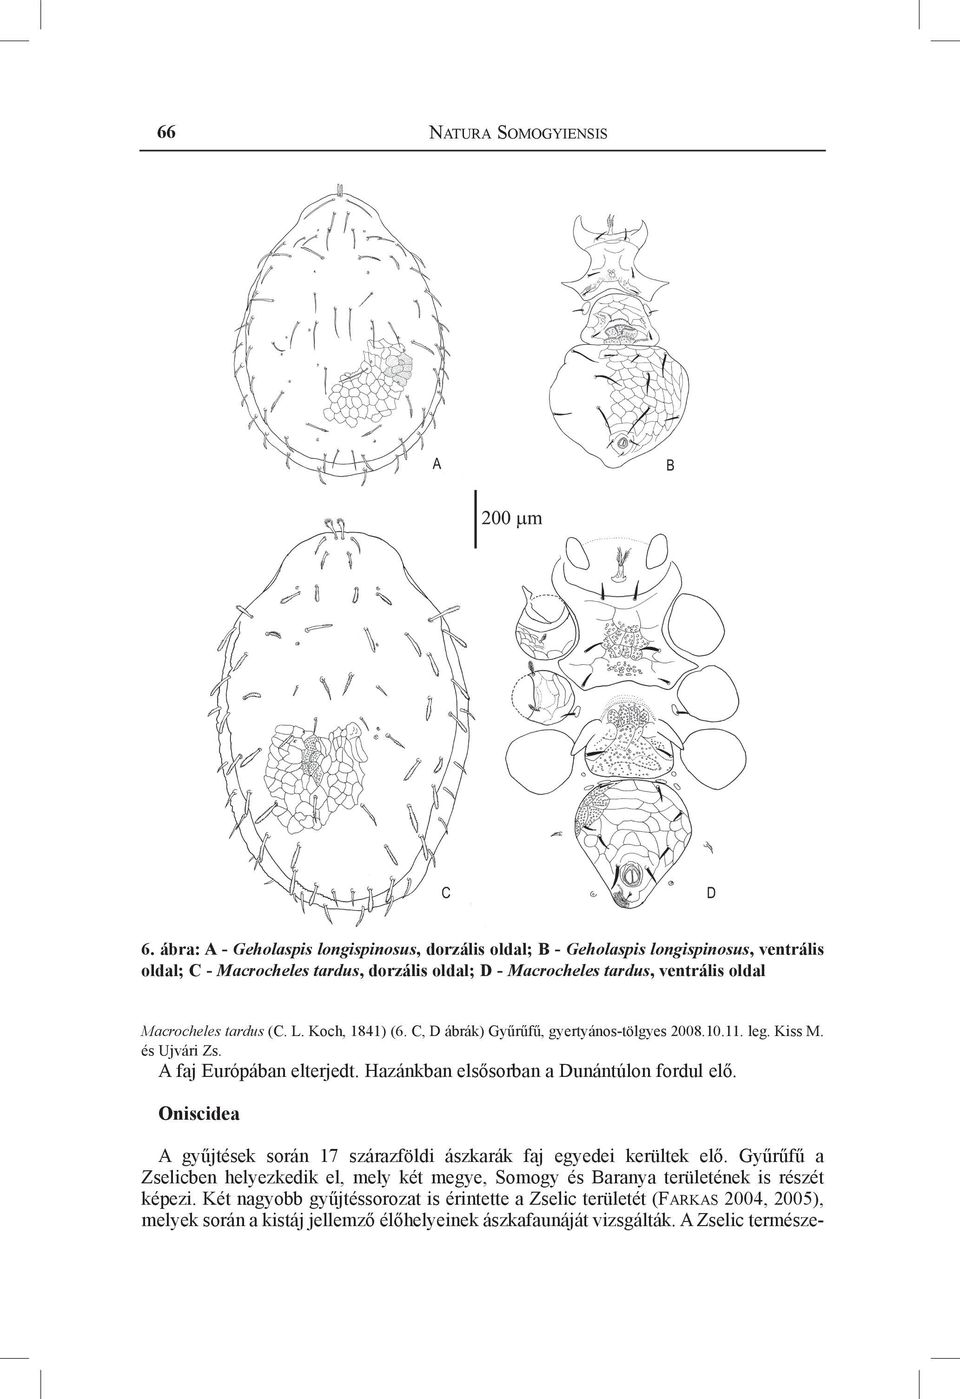 Macrocheles tardus (C. L. Koch, 1841) (6. C, D ábrák) Gyűrűfű, gyertyános-tölgyes 2008.10.11. leg. Kiss M. és Ujvári Zs. A faj Európában elterjedt.